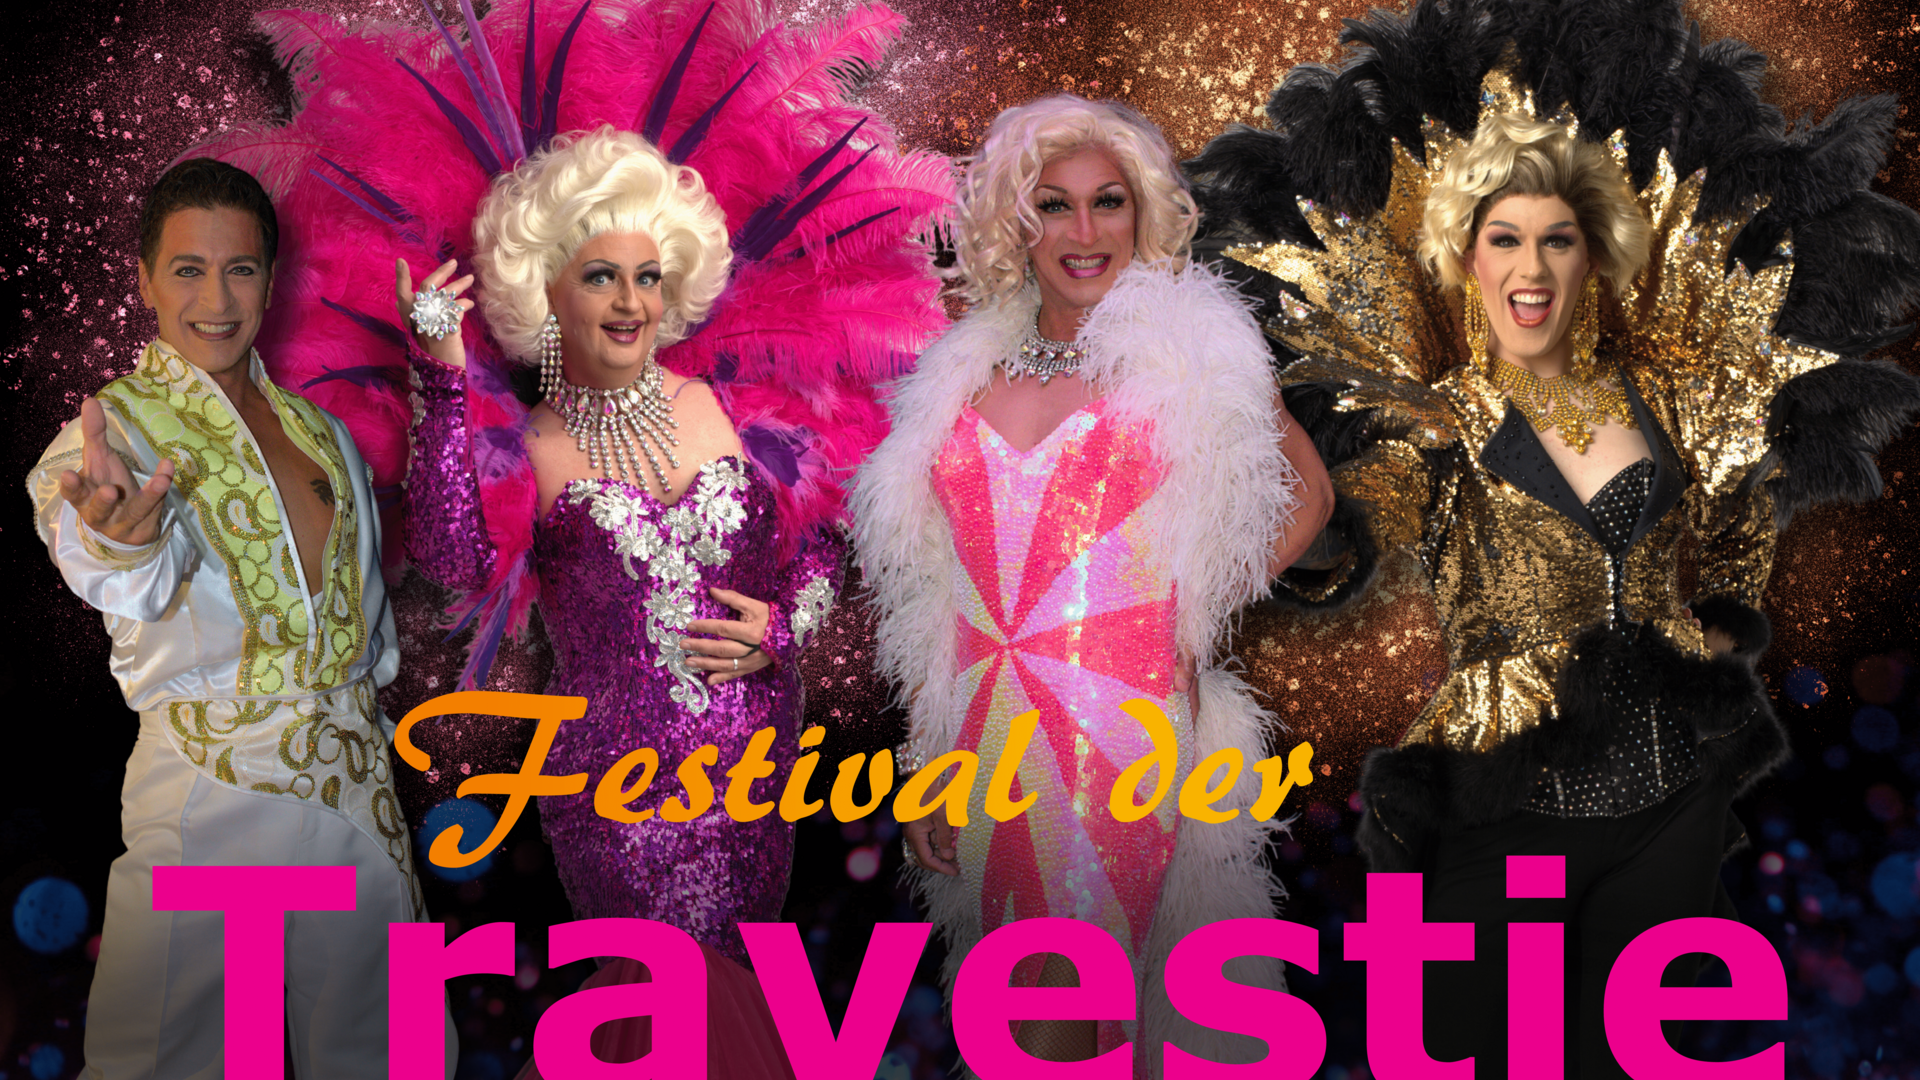 Festival der Travestie - Dinner Show